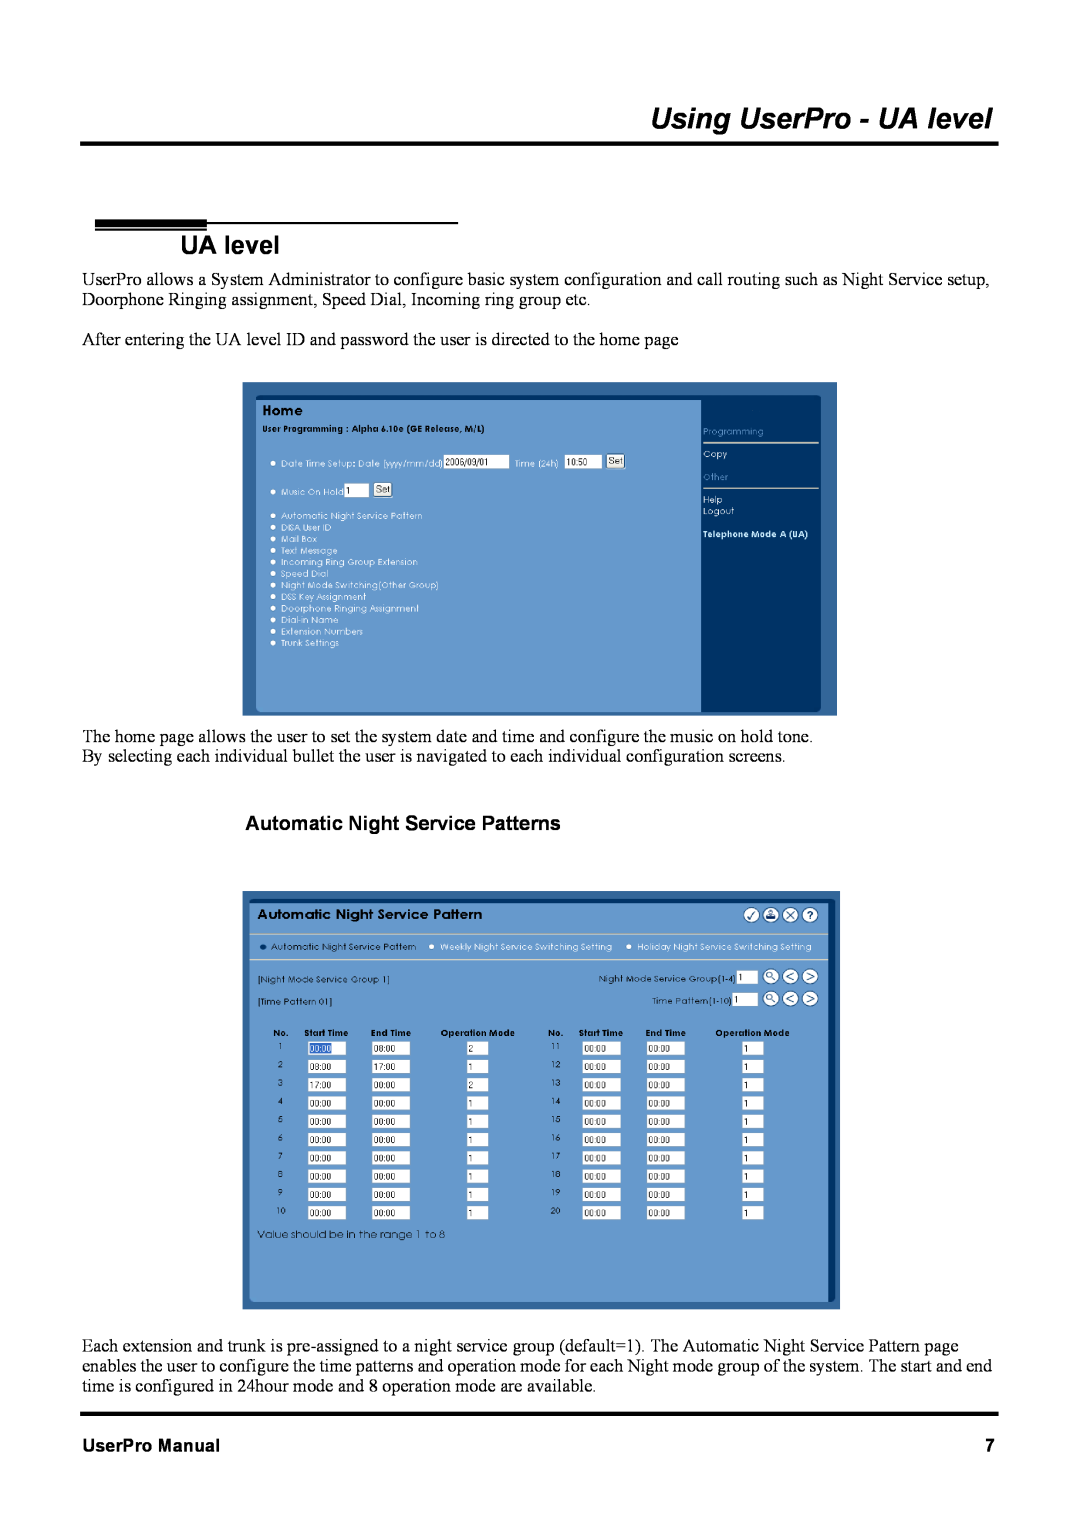 NEC XN120 manual Using UserPro - UA level, Automatic Night Service Patterns, UserPro Manual 